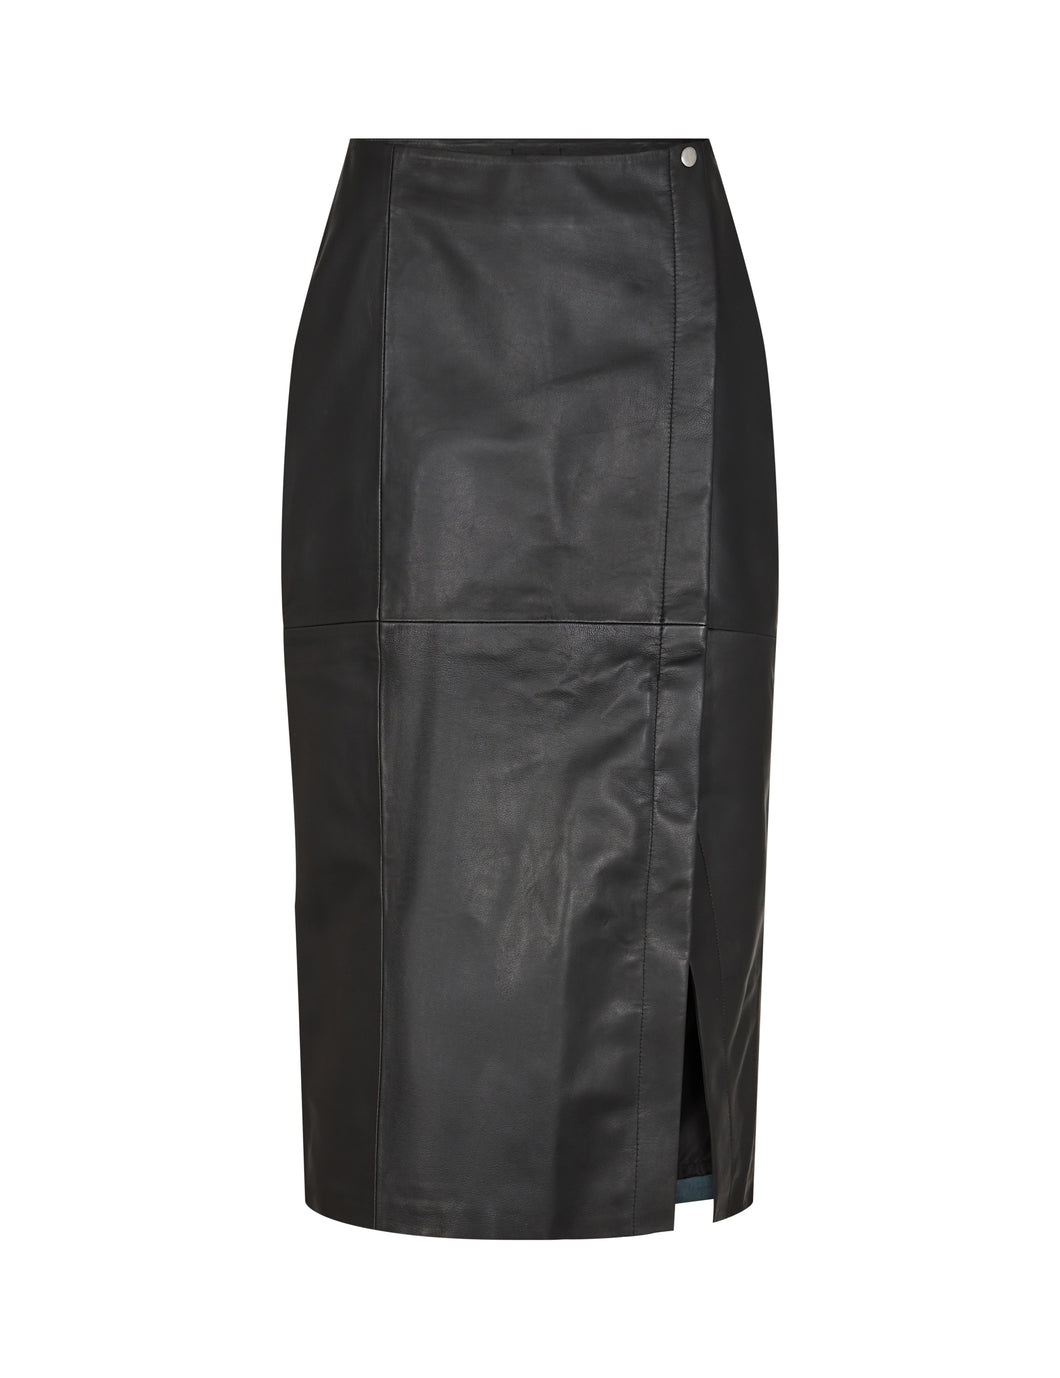 Levete Room Globa 30 Leather Skirt - Black